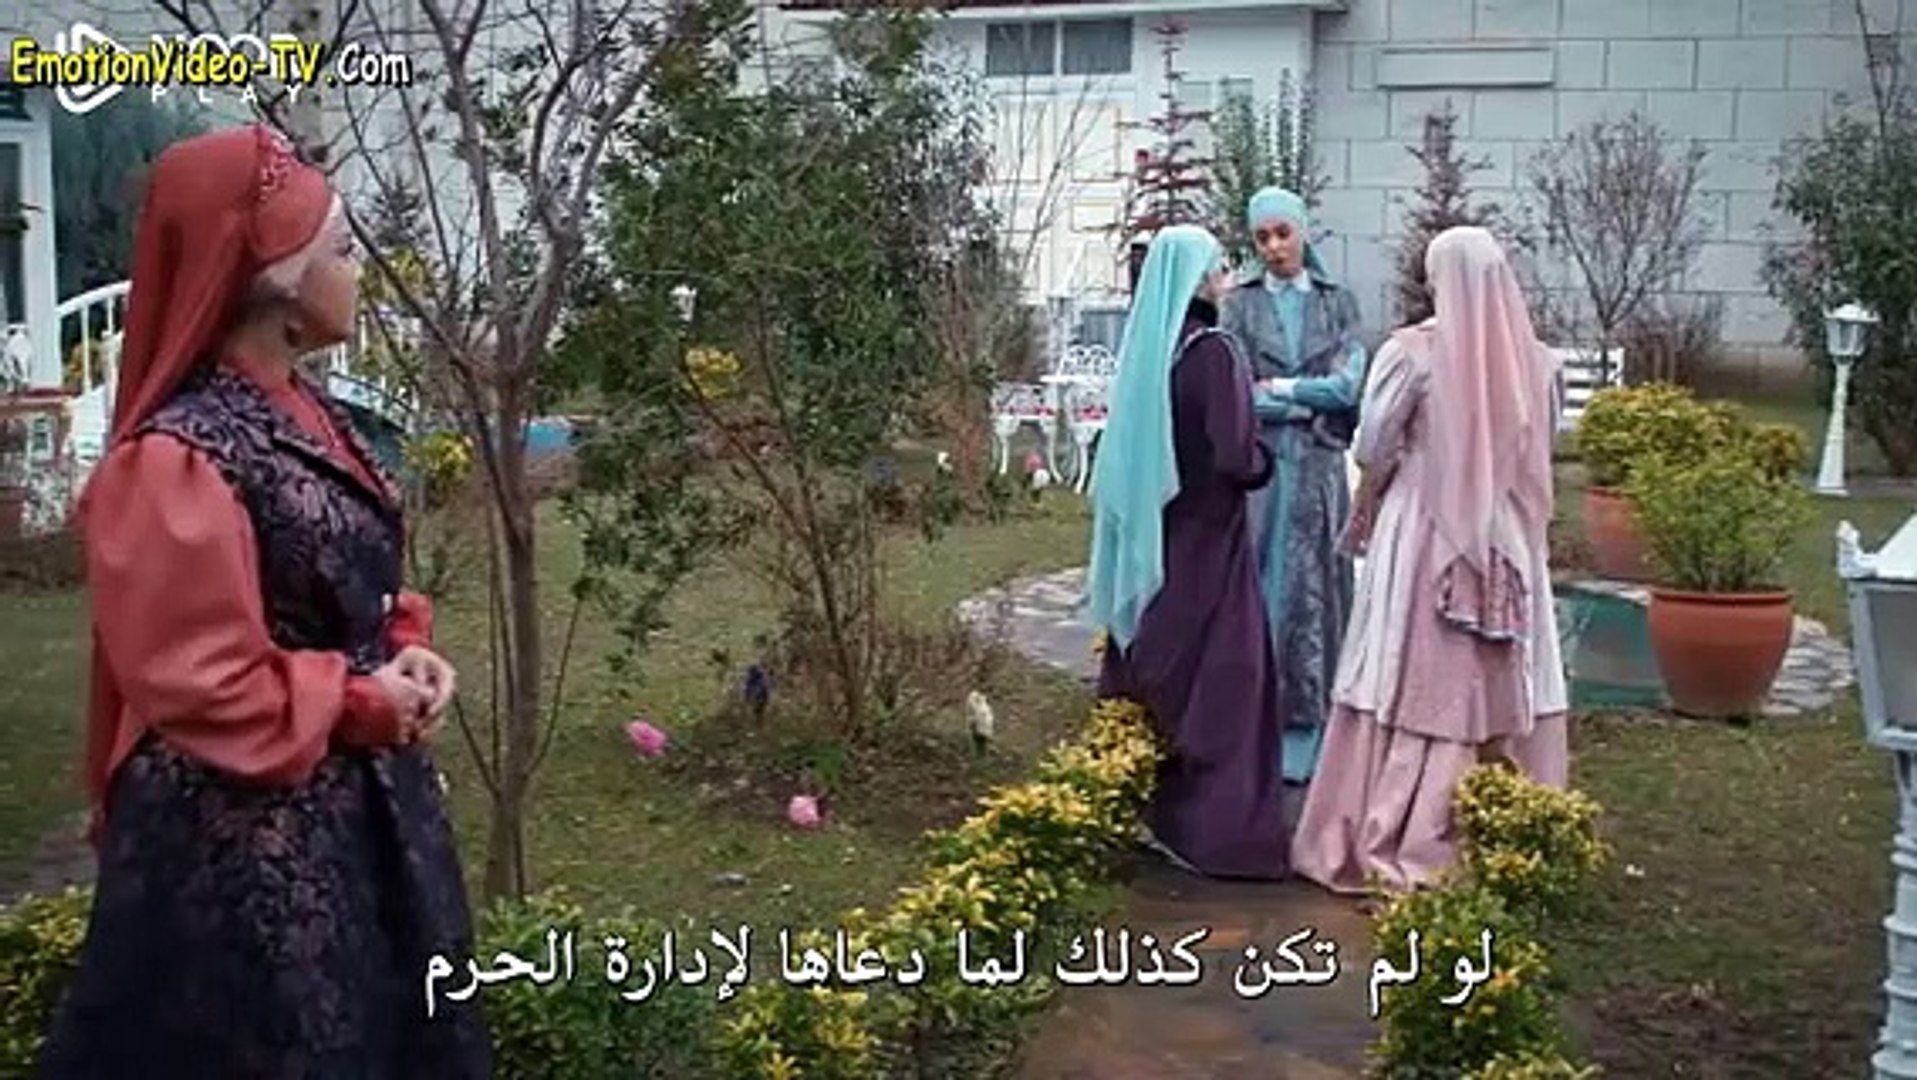 الحلقة 112 من مسلسل السلطان عبد الحميد الثاني مترجمة للعربية القسم الثاني Video Dailymotion